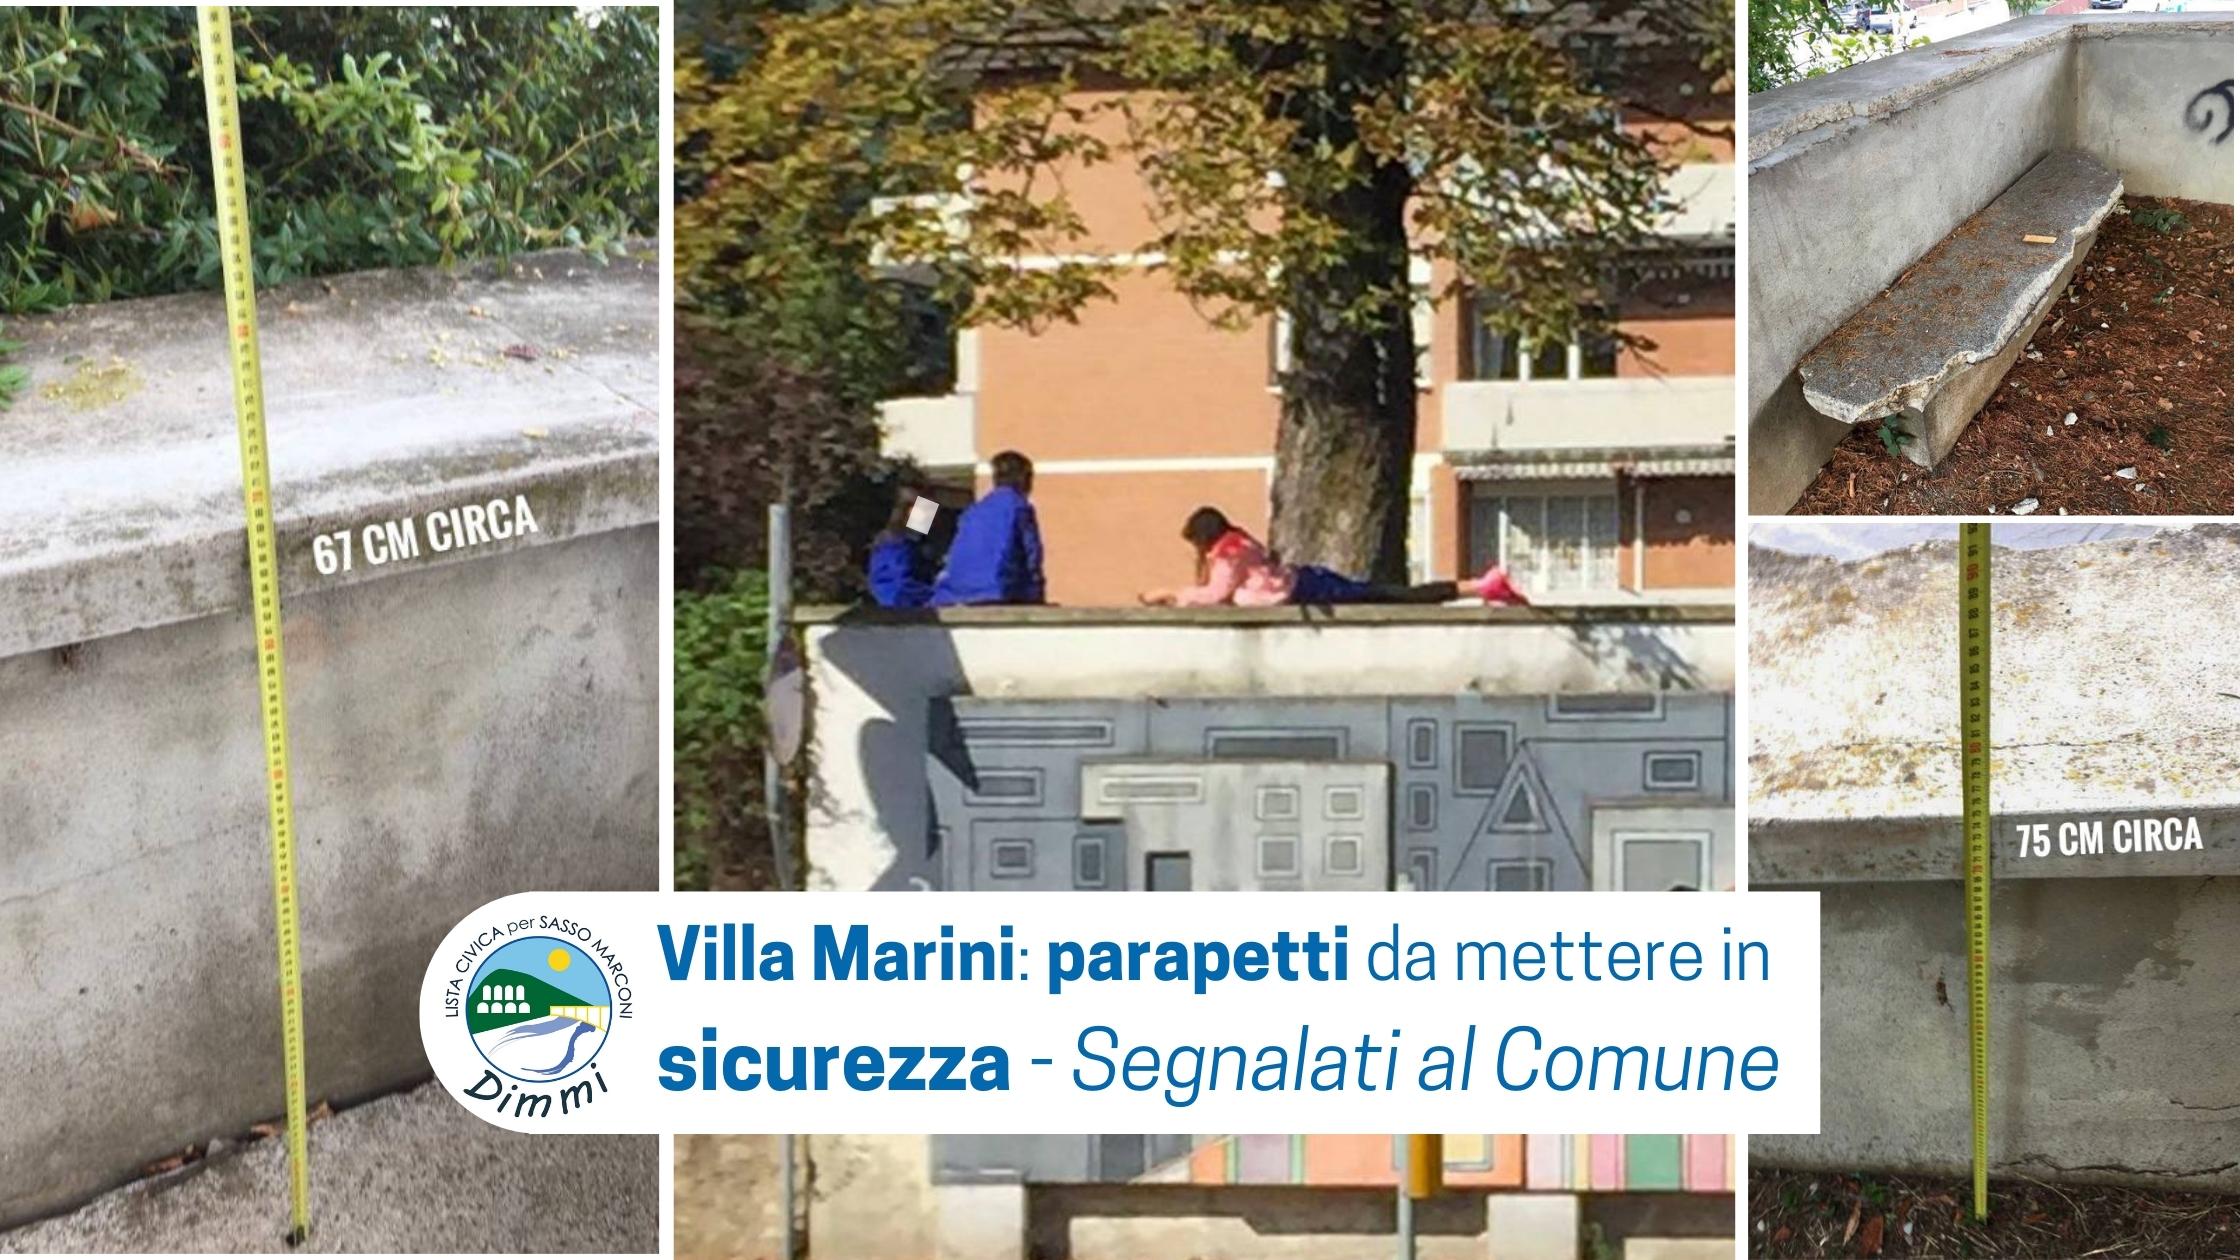 Al momento stai visualizzando Villa Marini: situazione di pericolo per l’incolumità degli alunni segnalata al Comune